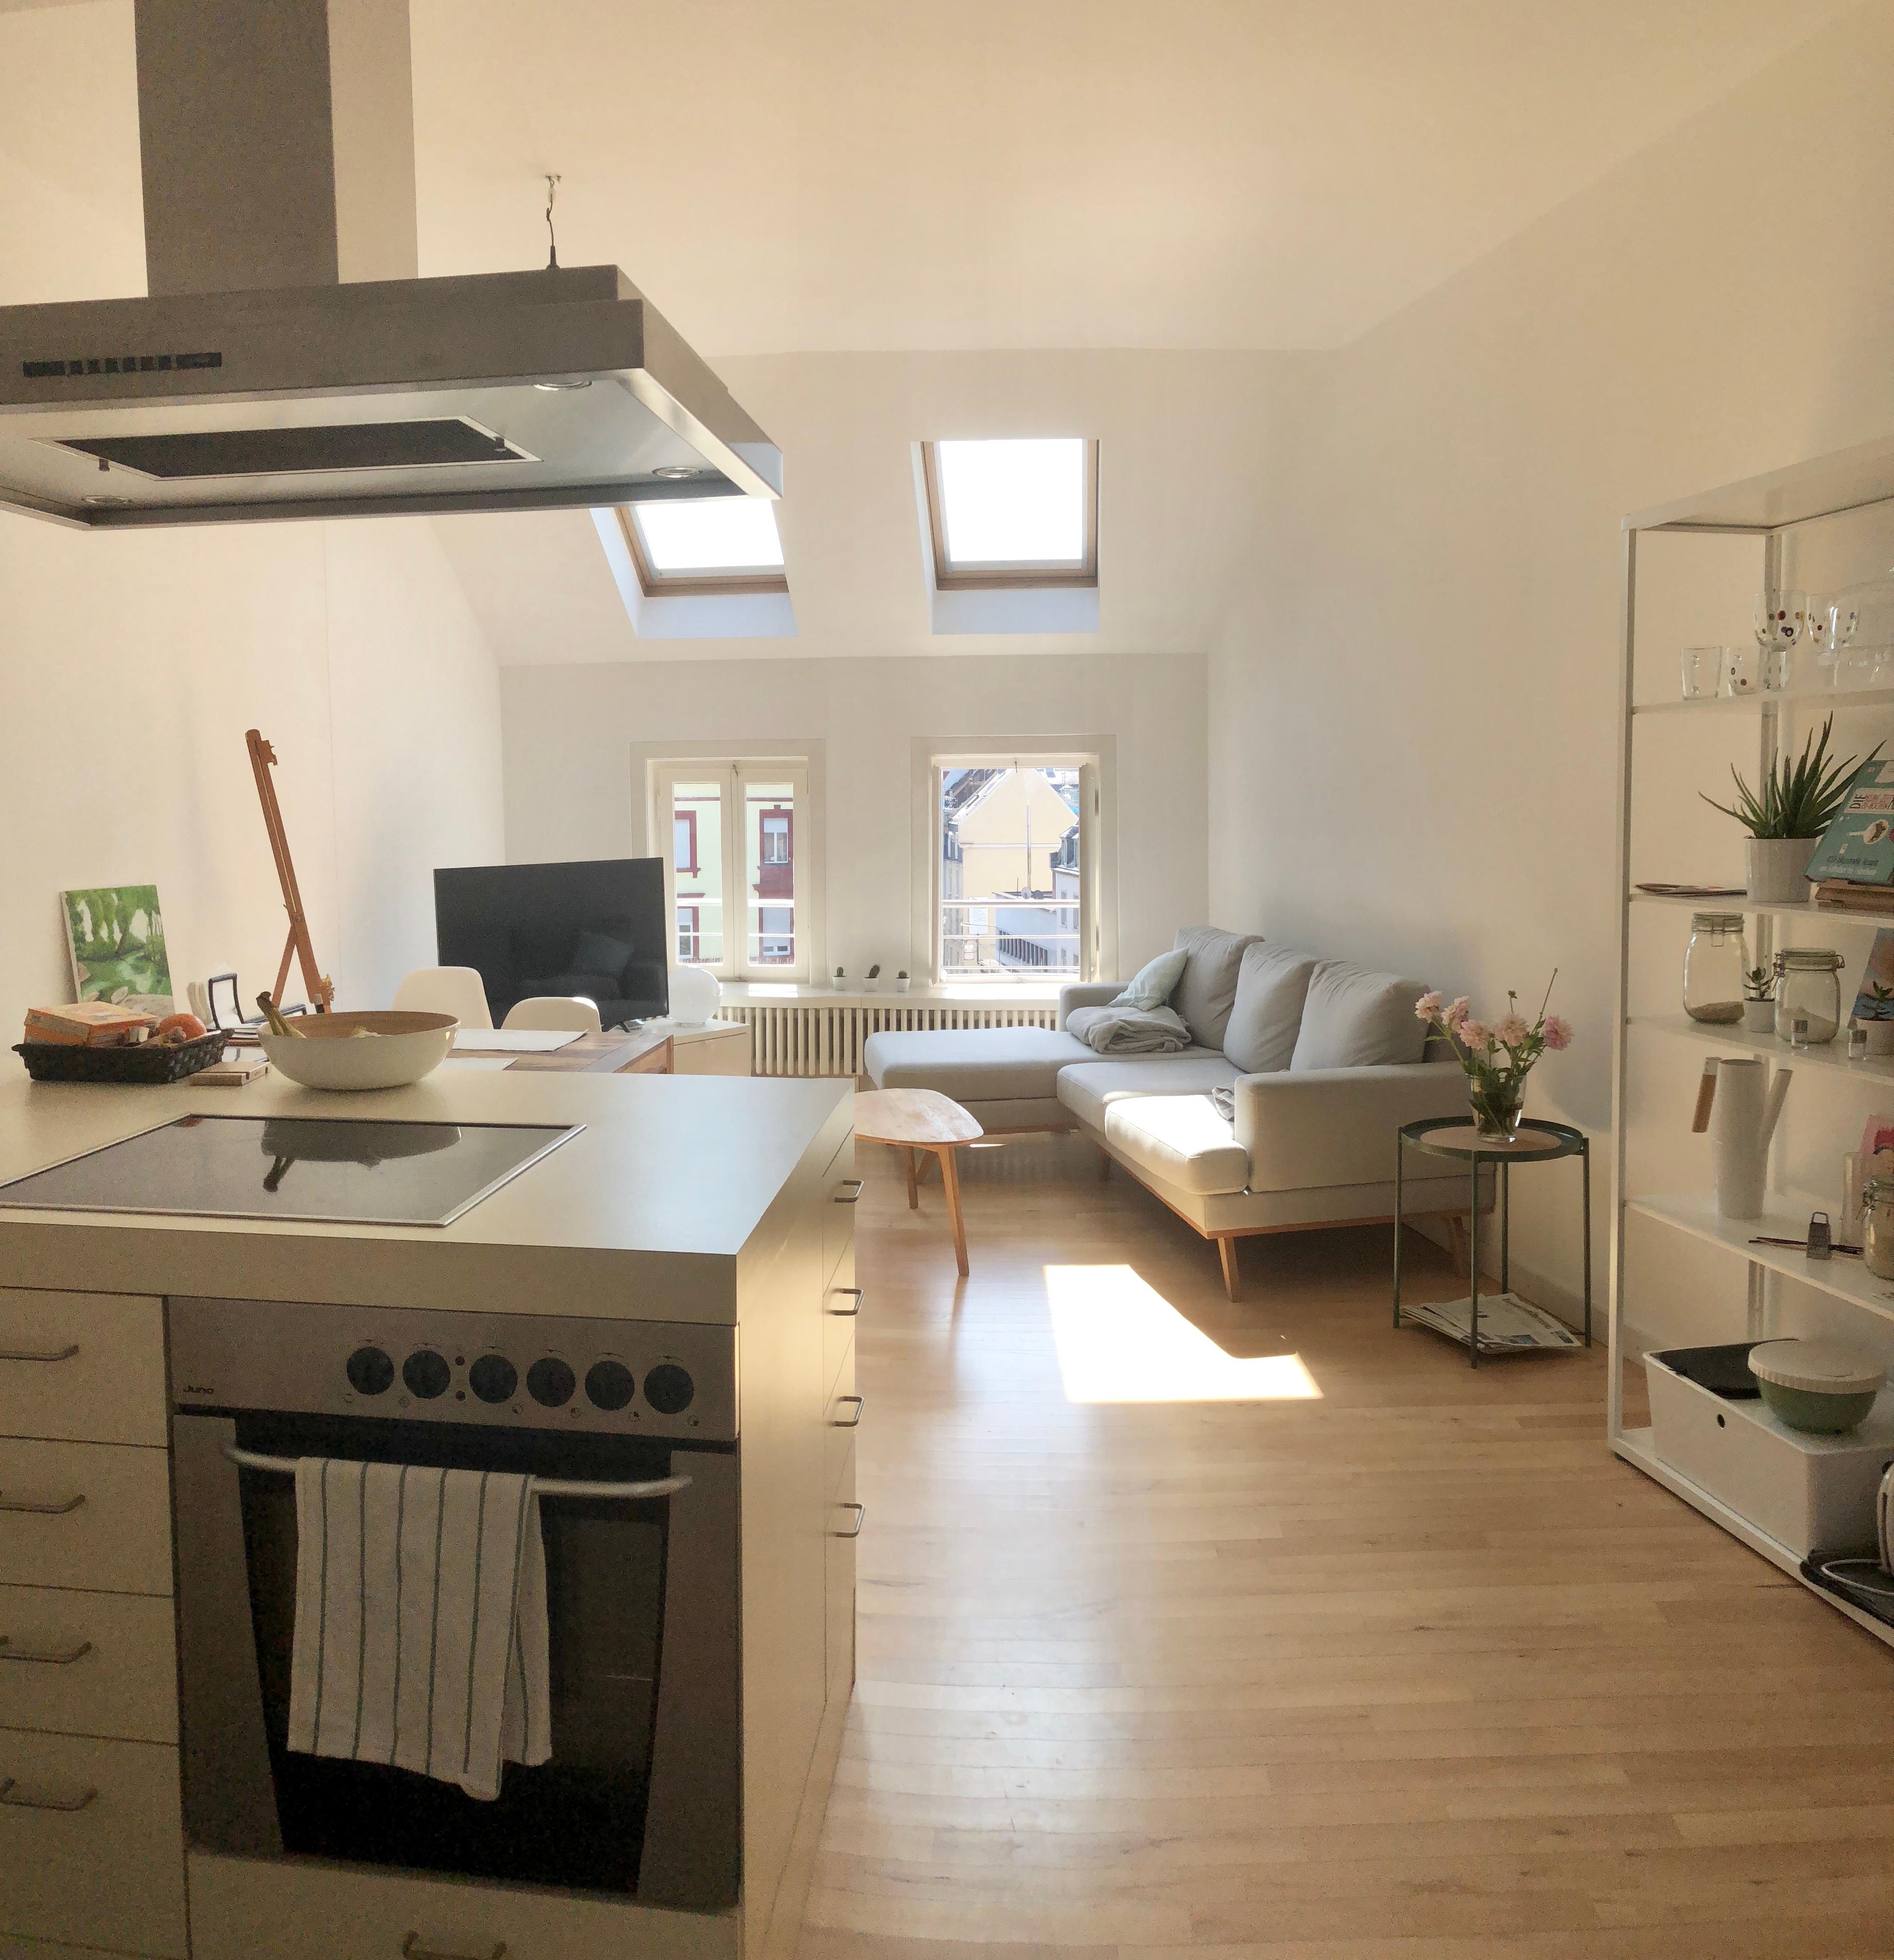 Wir lieben den kleinen, offenen Wohnraum und die Dachfenster, die den Raum so schön belichten #altbau#weiss#kücheninsel